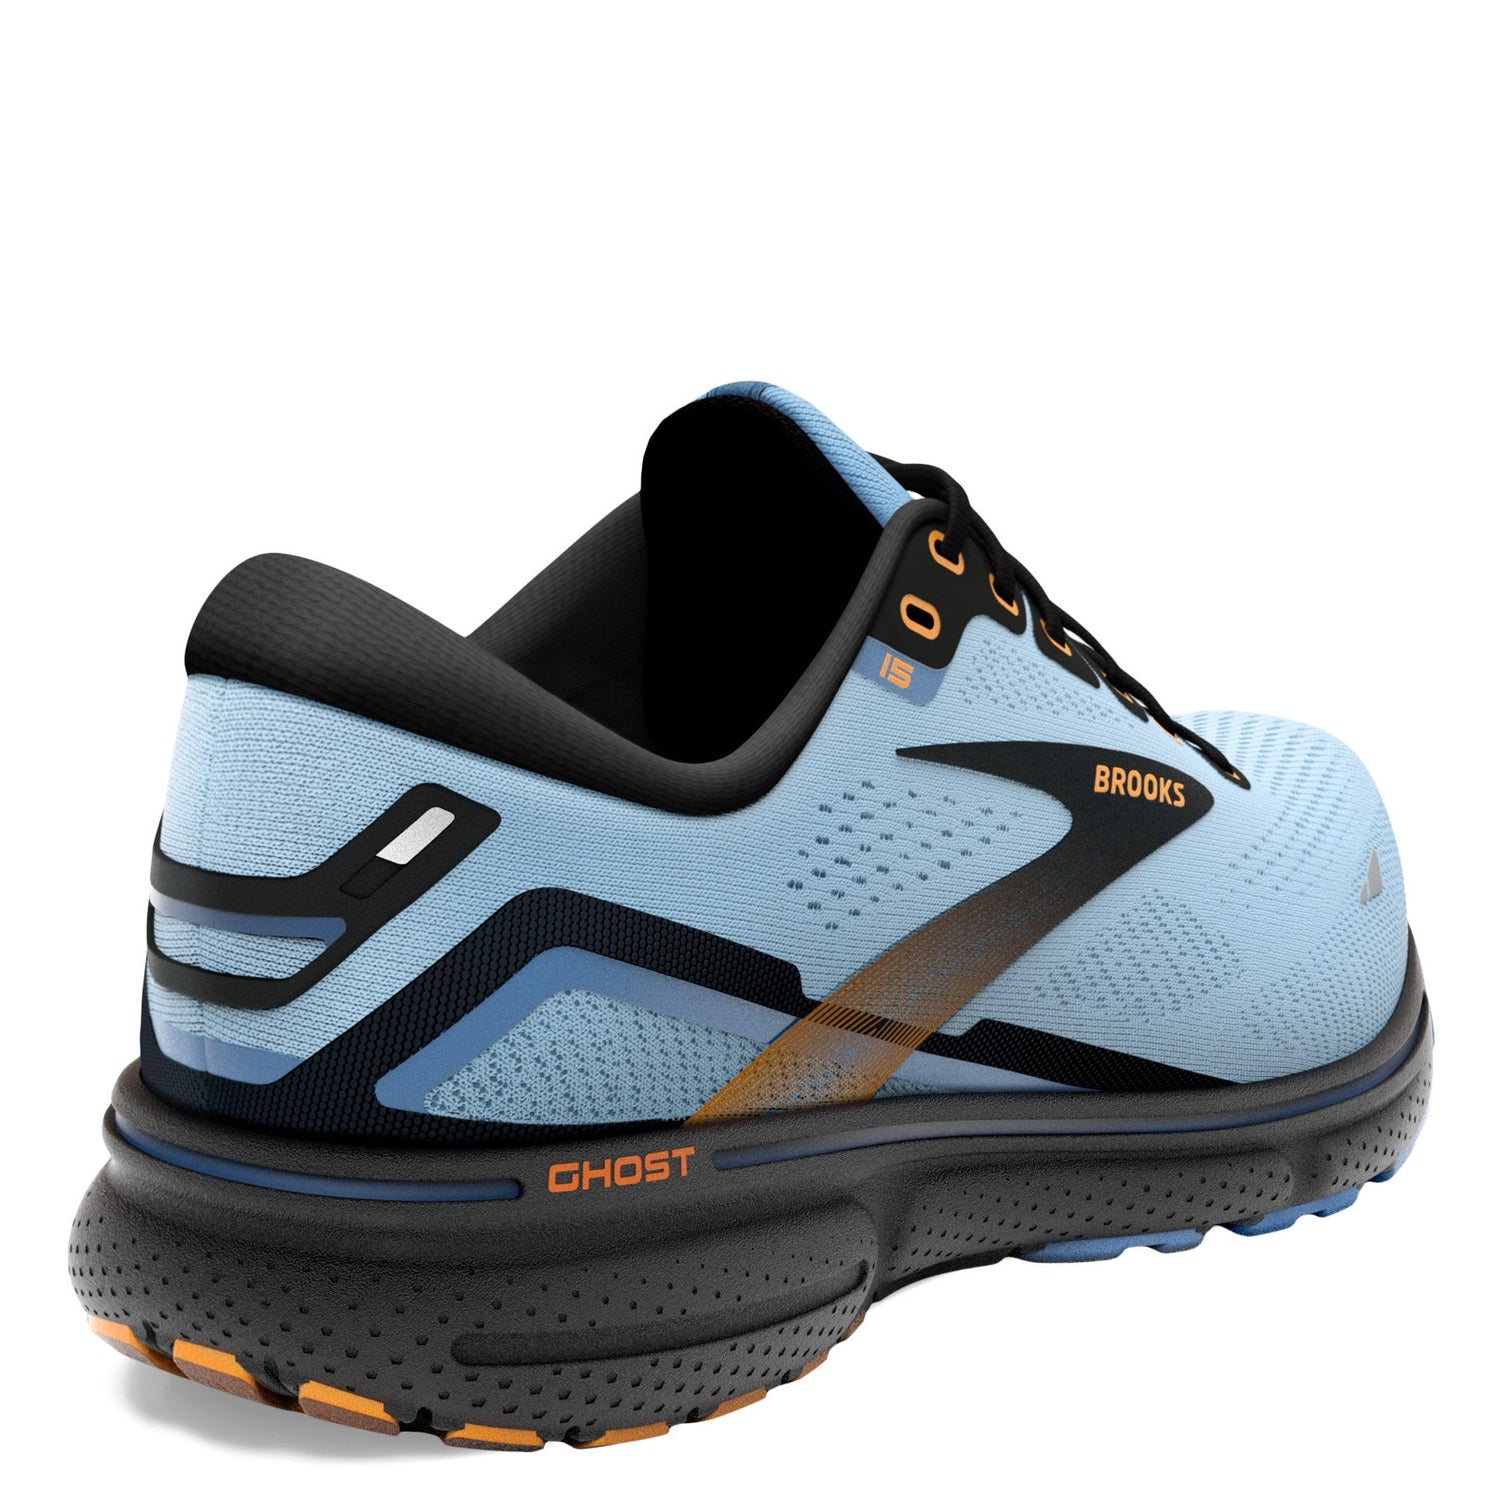 Peltz Shoes  Women's Brooks Ghost 15 Running Shoe Light Blue/Black/Yellow 120380 1B 437